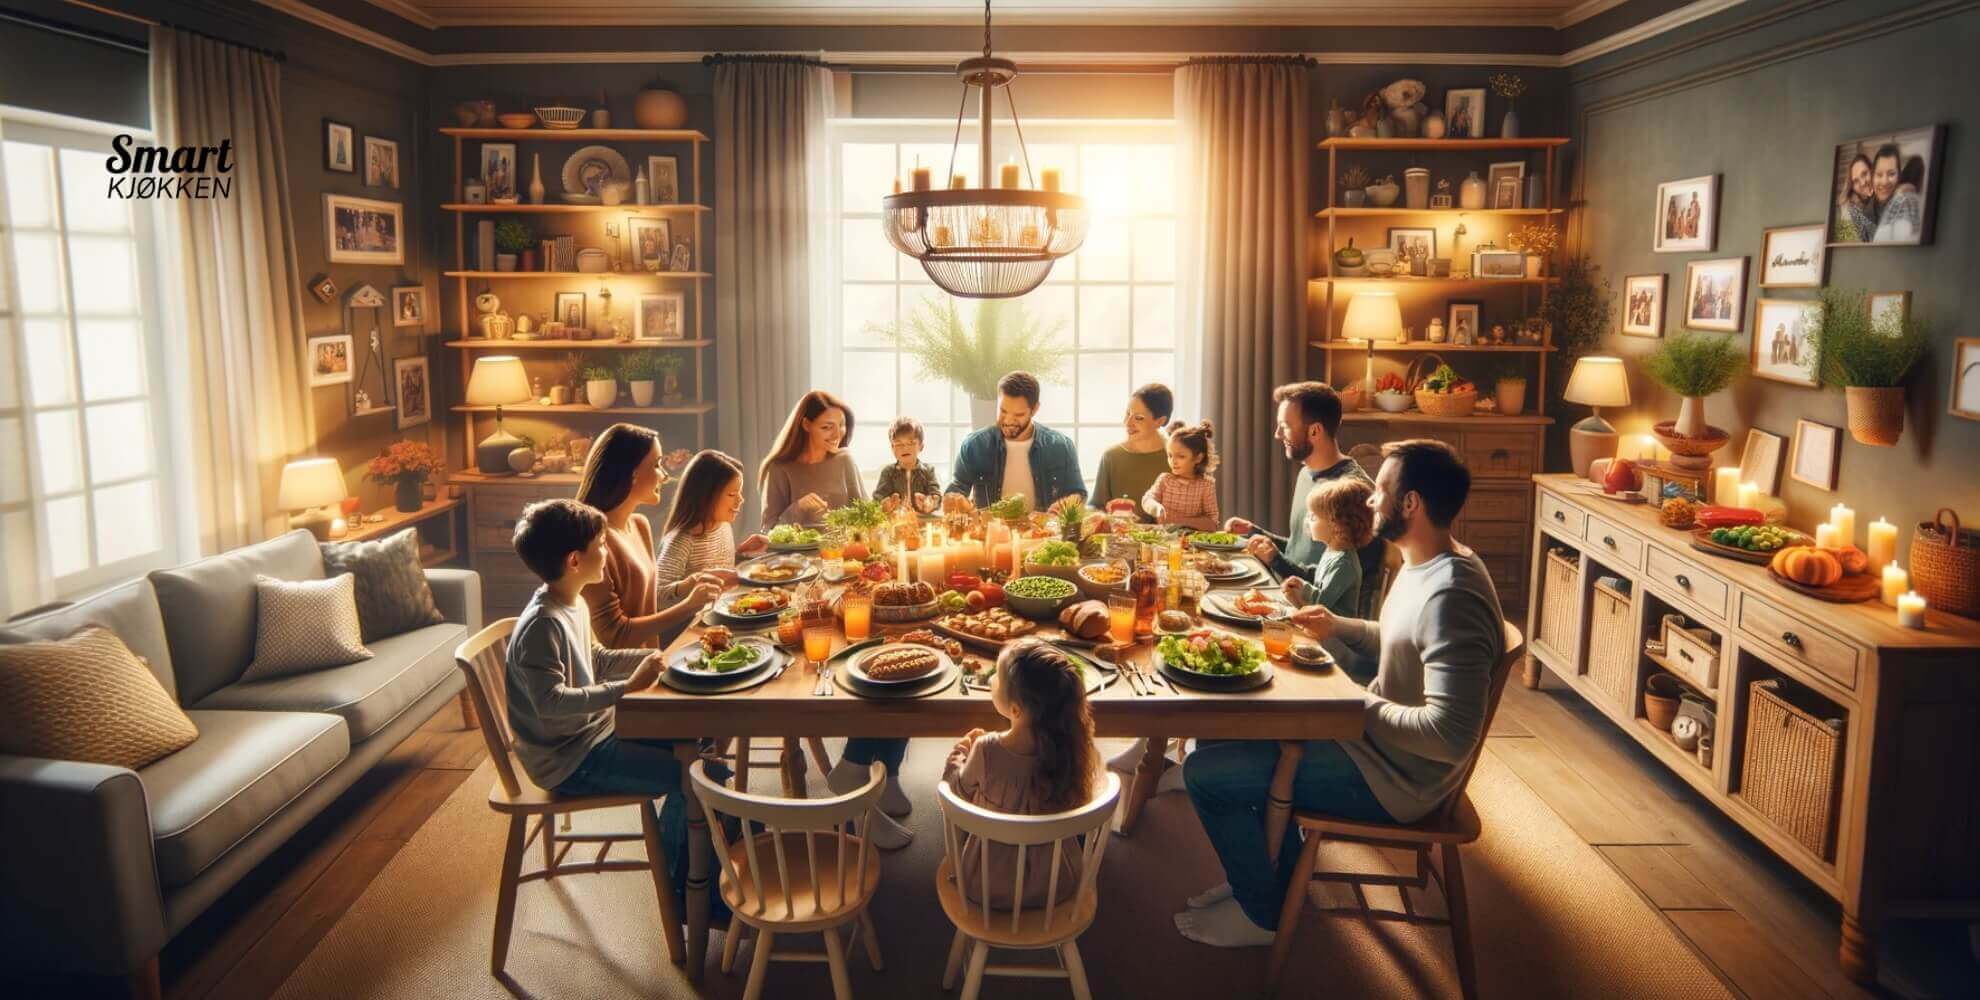 Bilde fra en familievennlig middag.